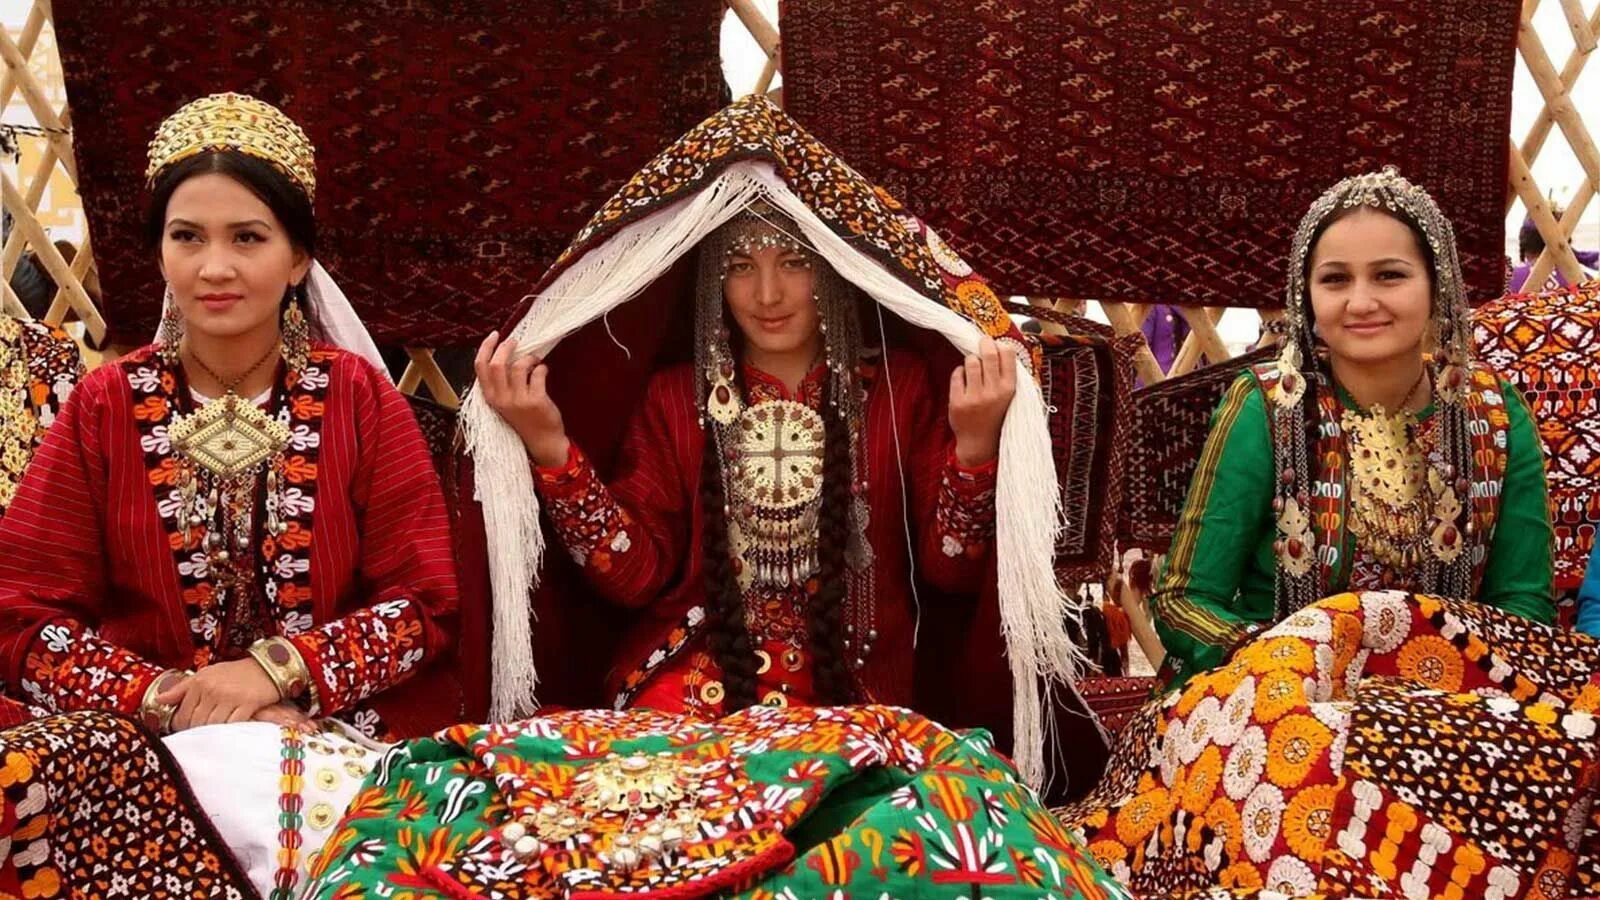 Туркмены и турки. Свадьба Ашхабадская туркменский. Национальный наряд невесты Туркмен. Туркменистан Туркмен туркменка. Национальная одежда Туркмении Национальная одежда.